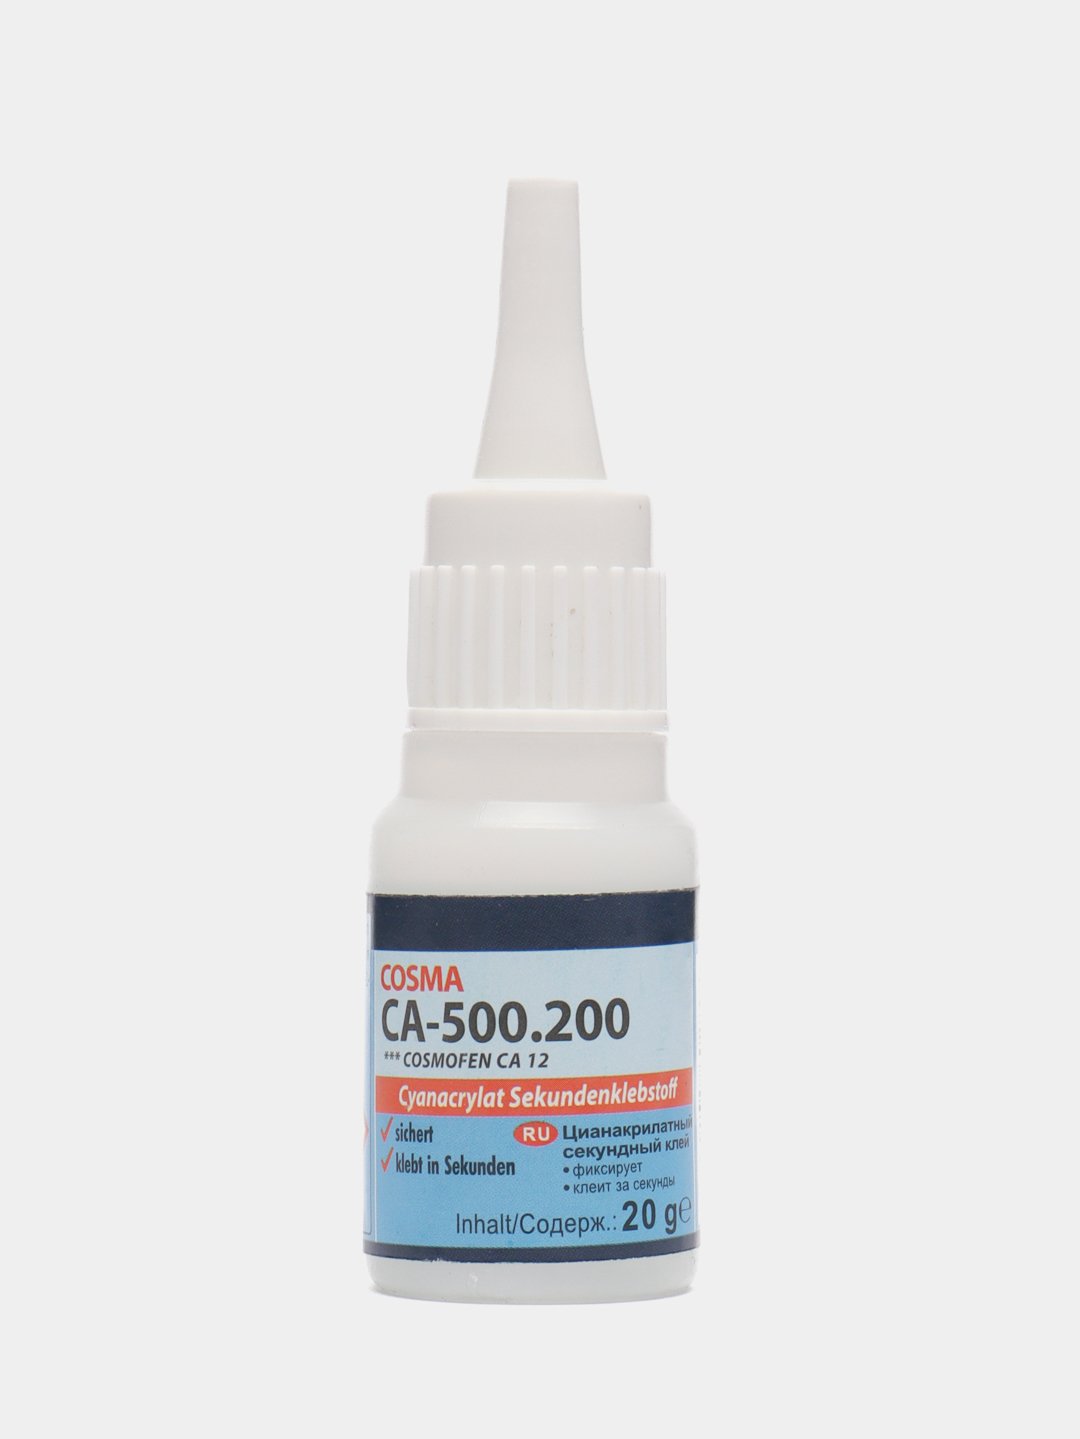 Супер-клейцианоакрилатныйсекундныйCosmofenCA-500.200,20граммкупитьпоцене0₽винтернет-магазинеKazanExpress